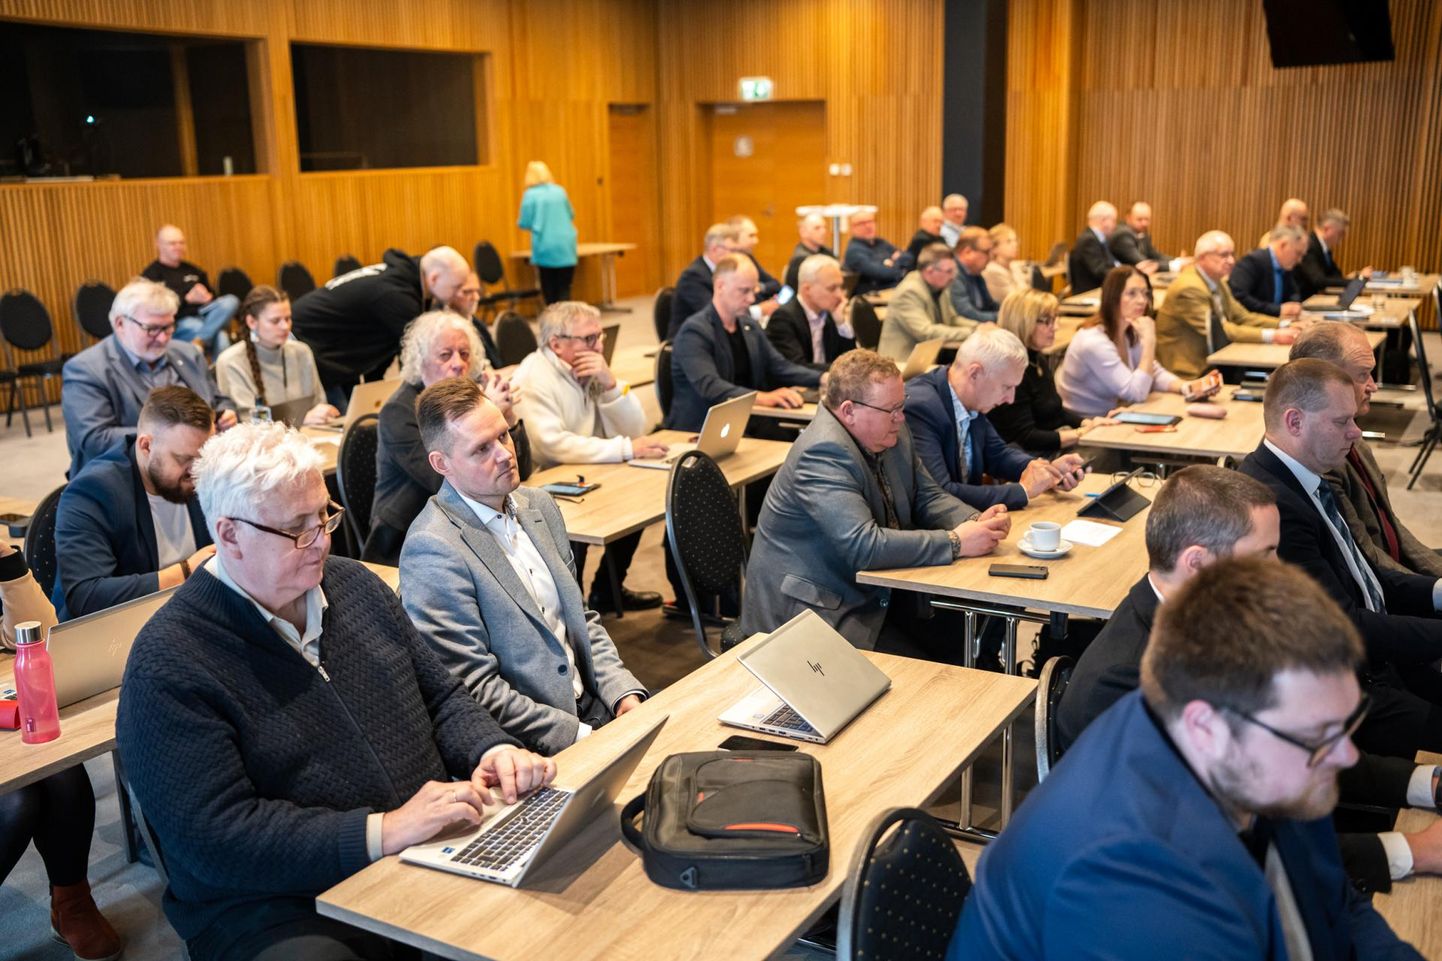 Pärnu linnavolikogu koguneb täna istungile Estonia spaahotelli konverentsisaali.